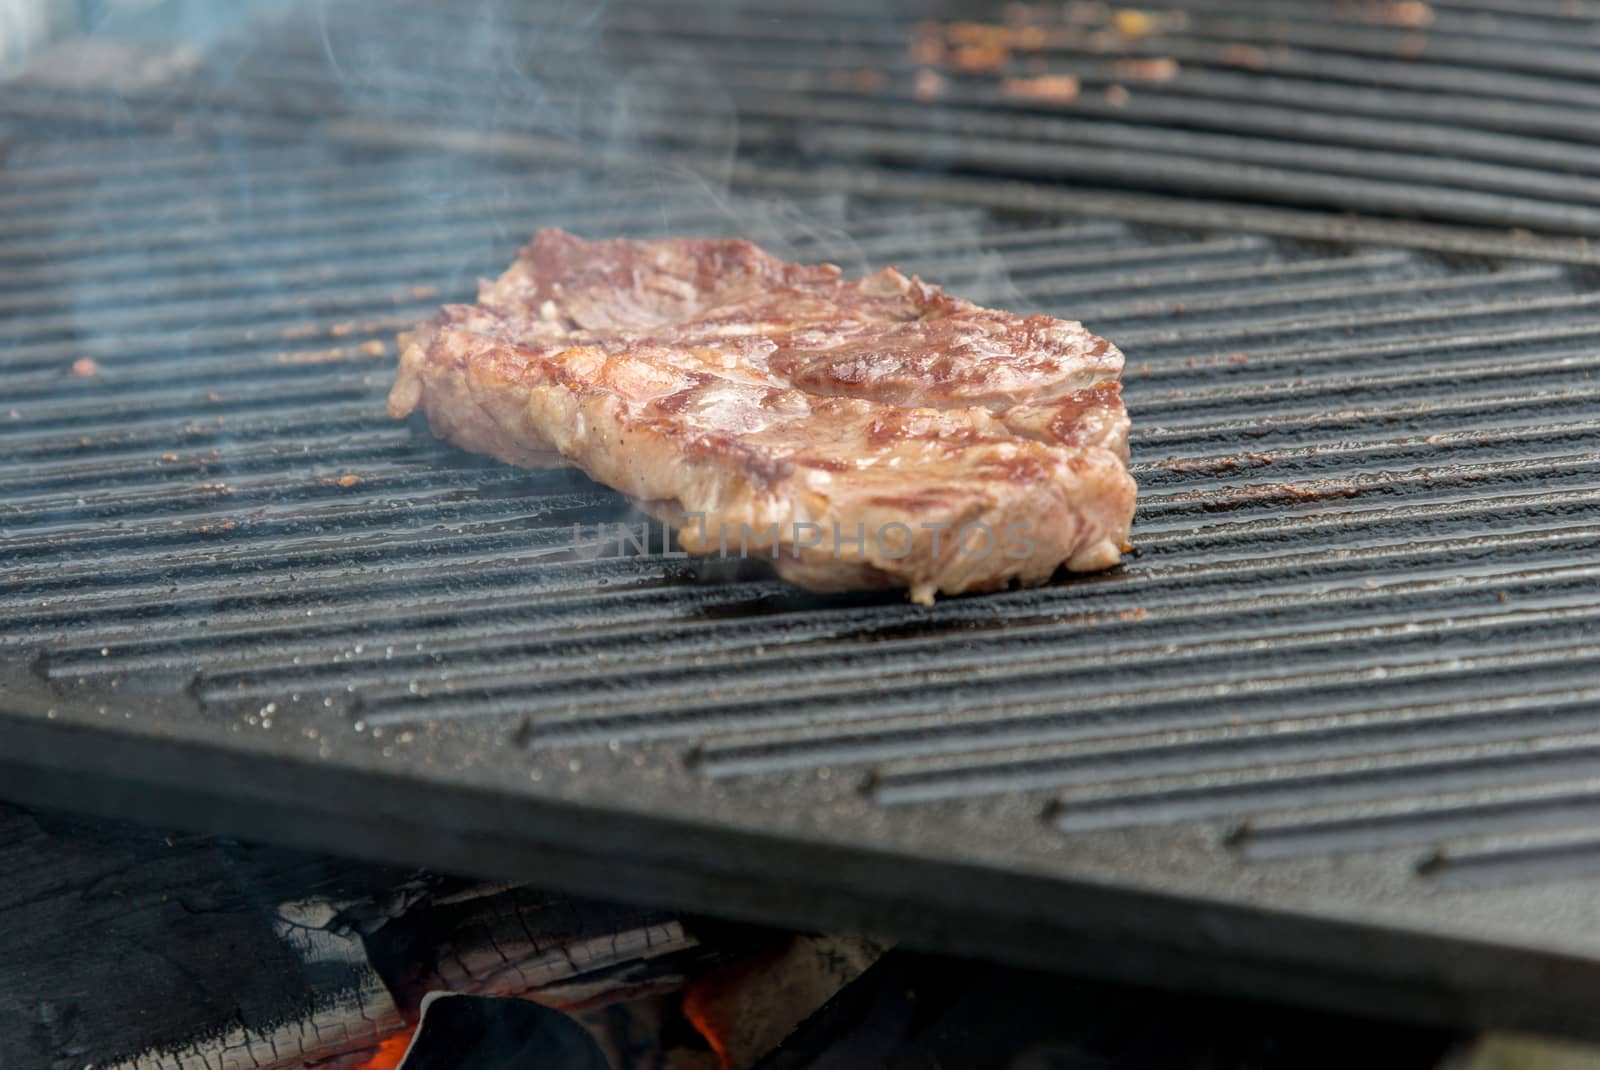 beef steaks on the grill by vlaru